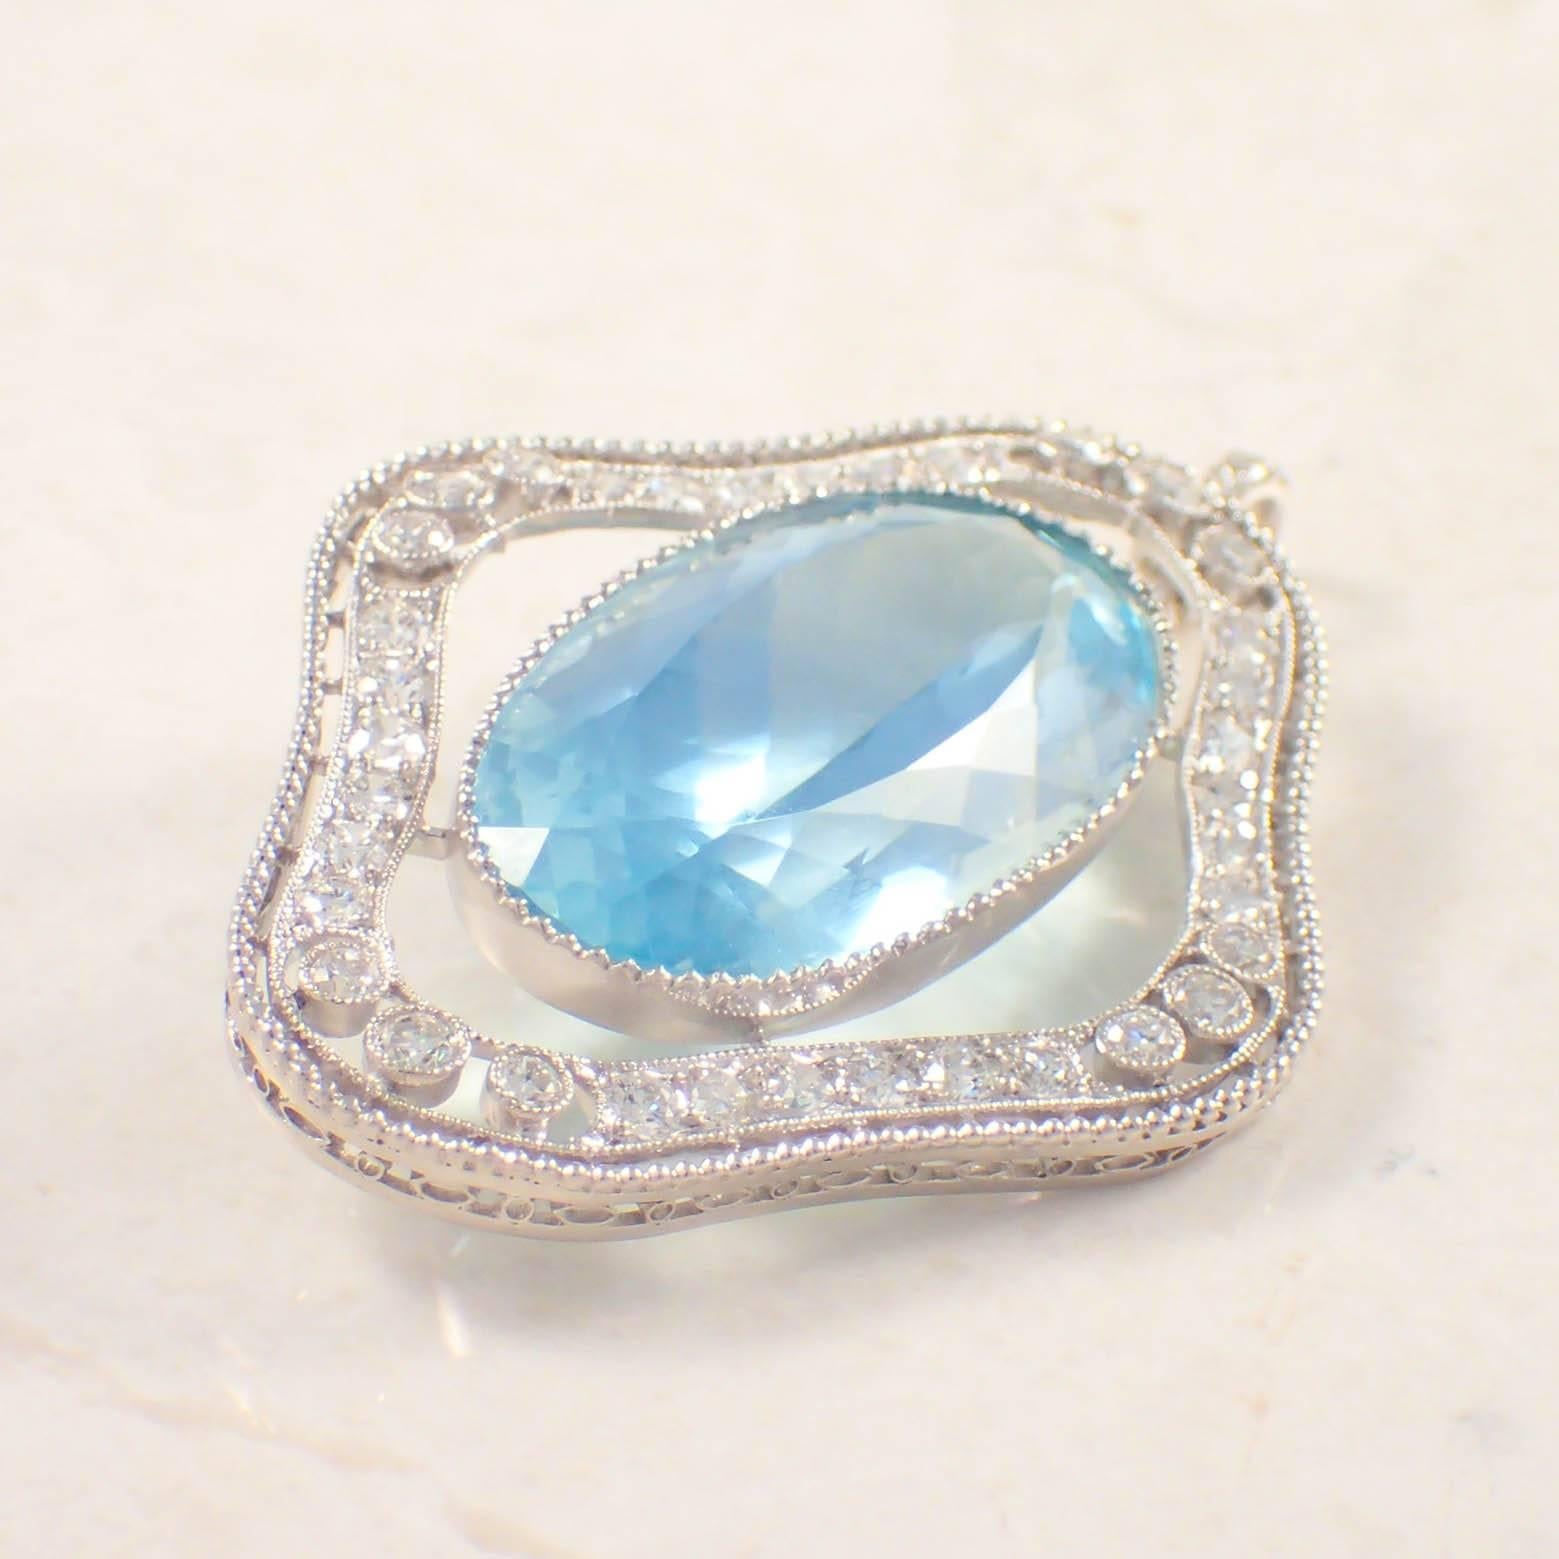 Women's Marcus & Co. Art Deco Aquamarine Diamond Platinum Pendant